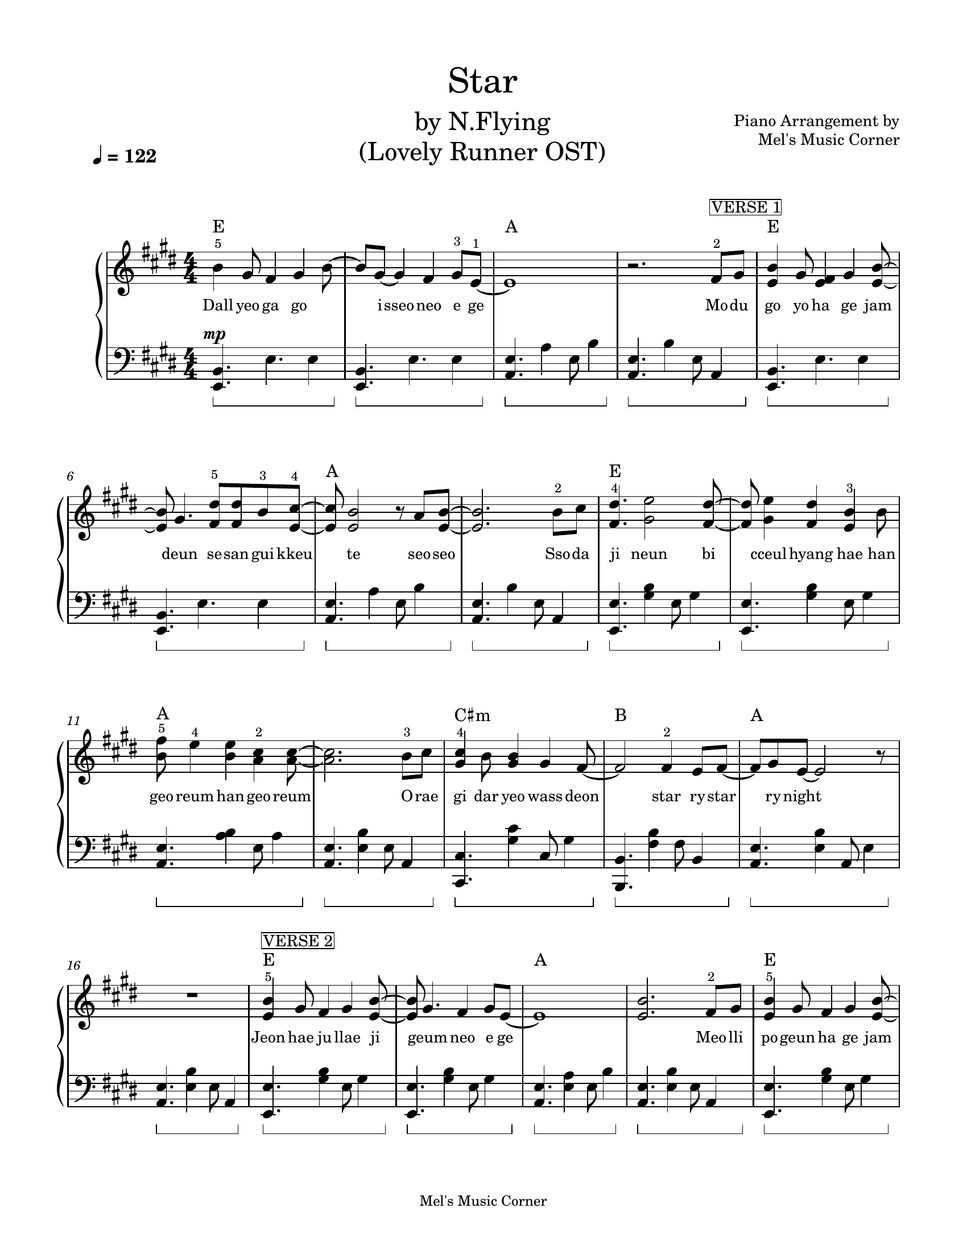 N.Flying - Star - Lovely Runner OST (piano sheet music) by Mel's Music Corner